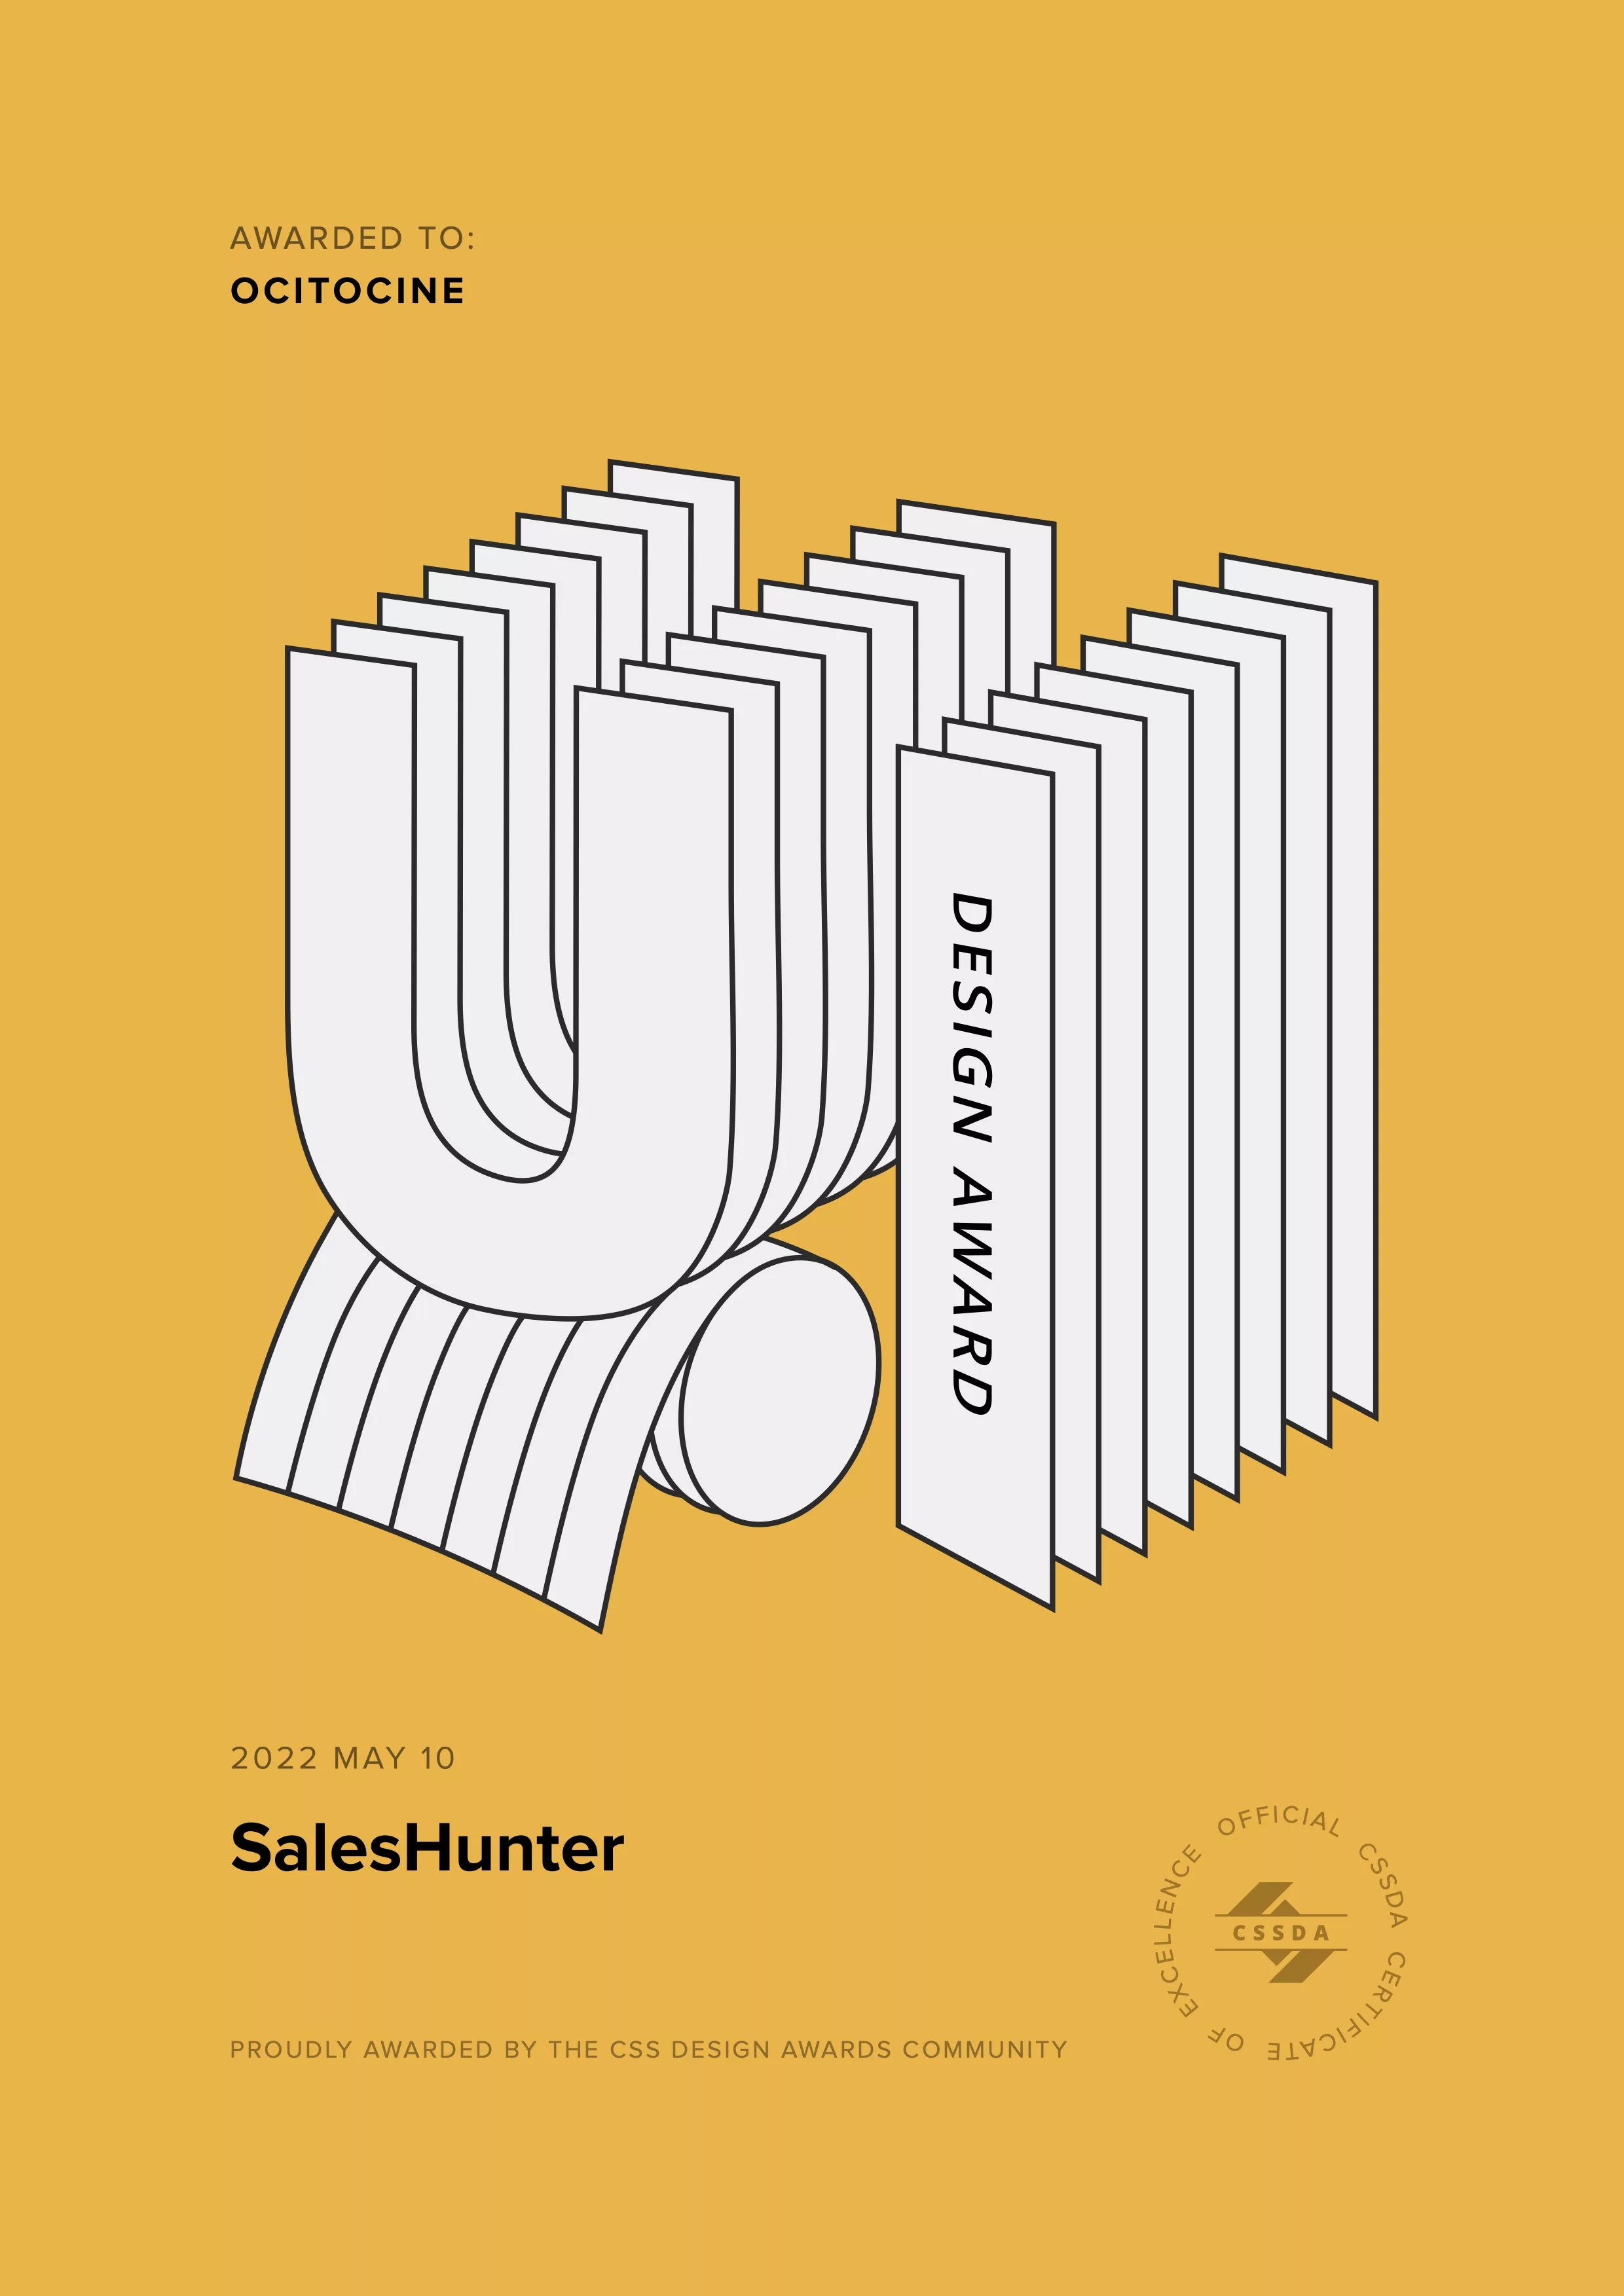 Ocitocine, agence créative web et branding, a remporté un prix "CSSDA UI Design Award" pour la réalisation du site web saleshunter.ch